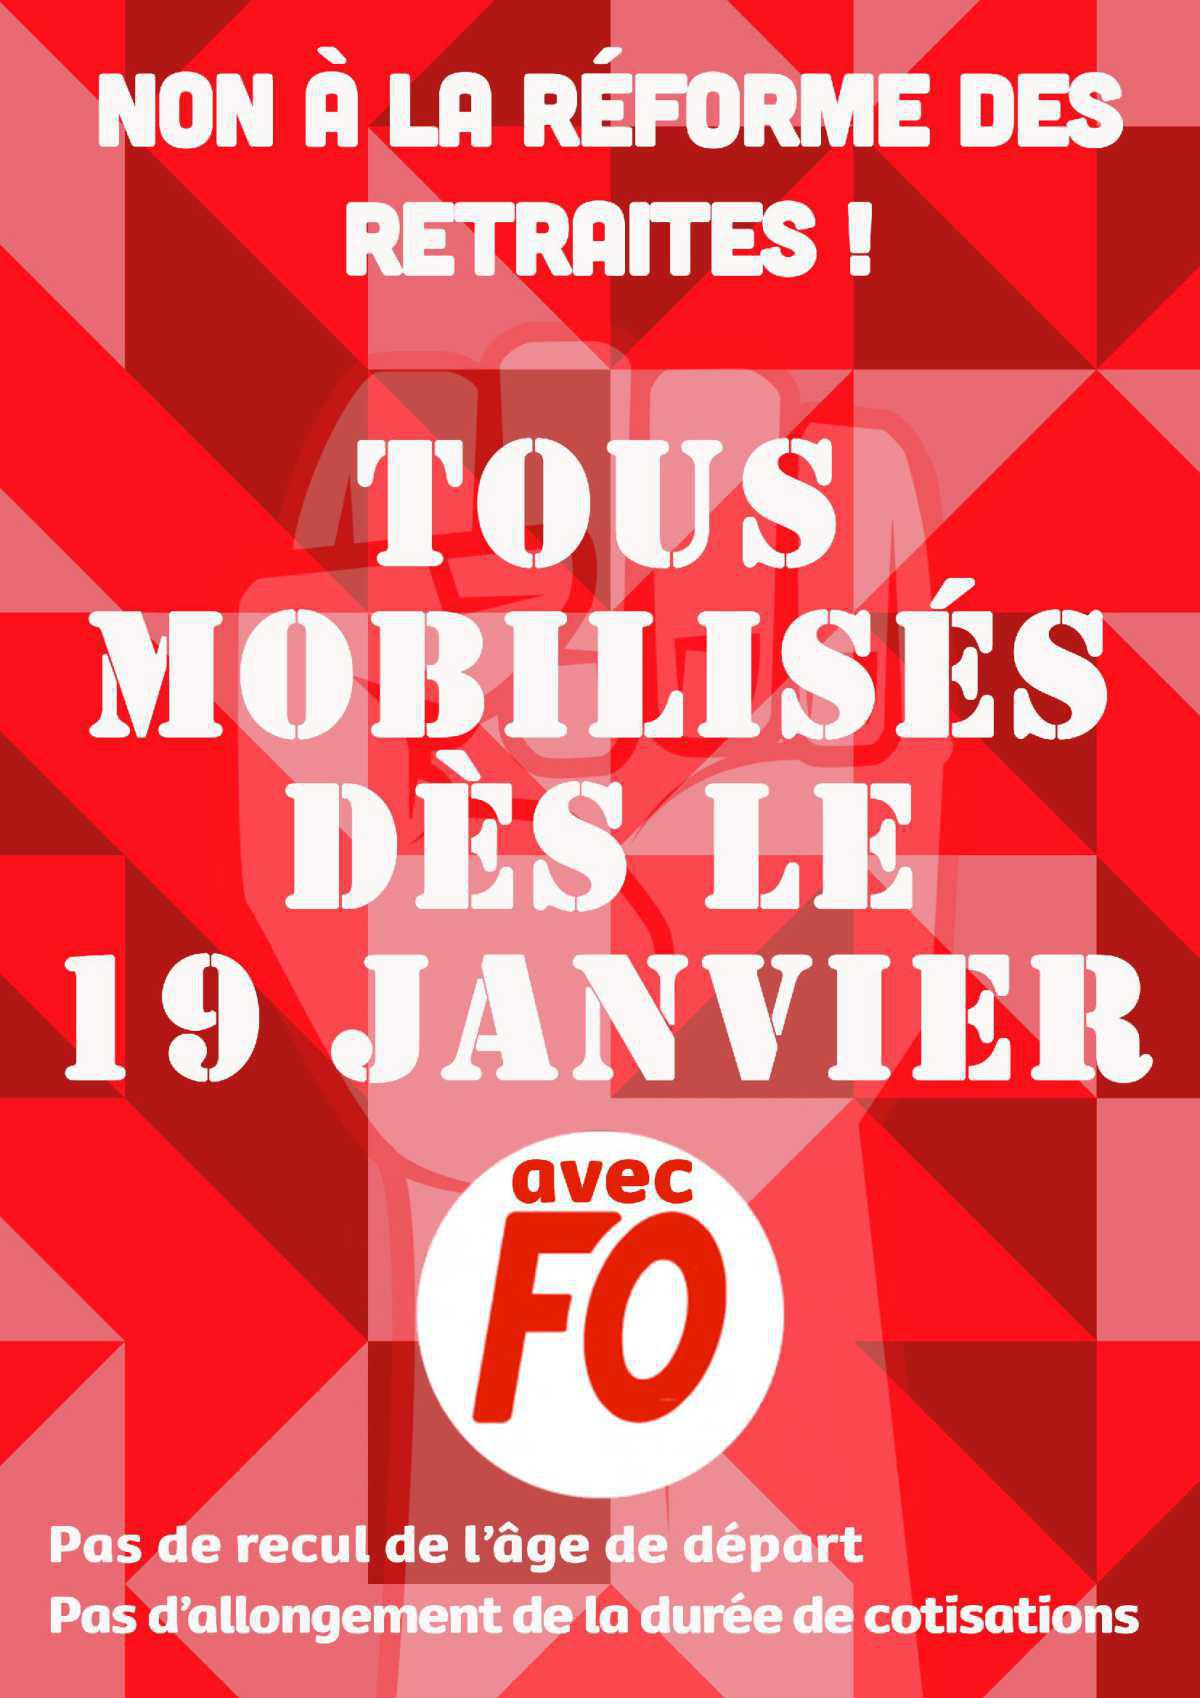 Retraites : Appel à la grève et à la mobilisation le 19 Janvier